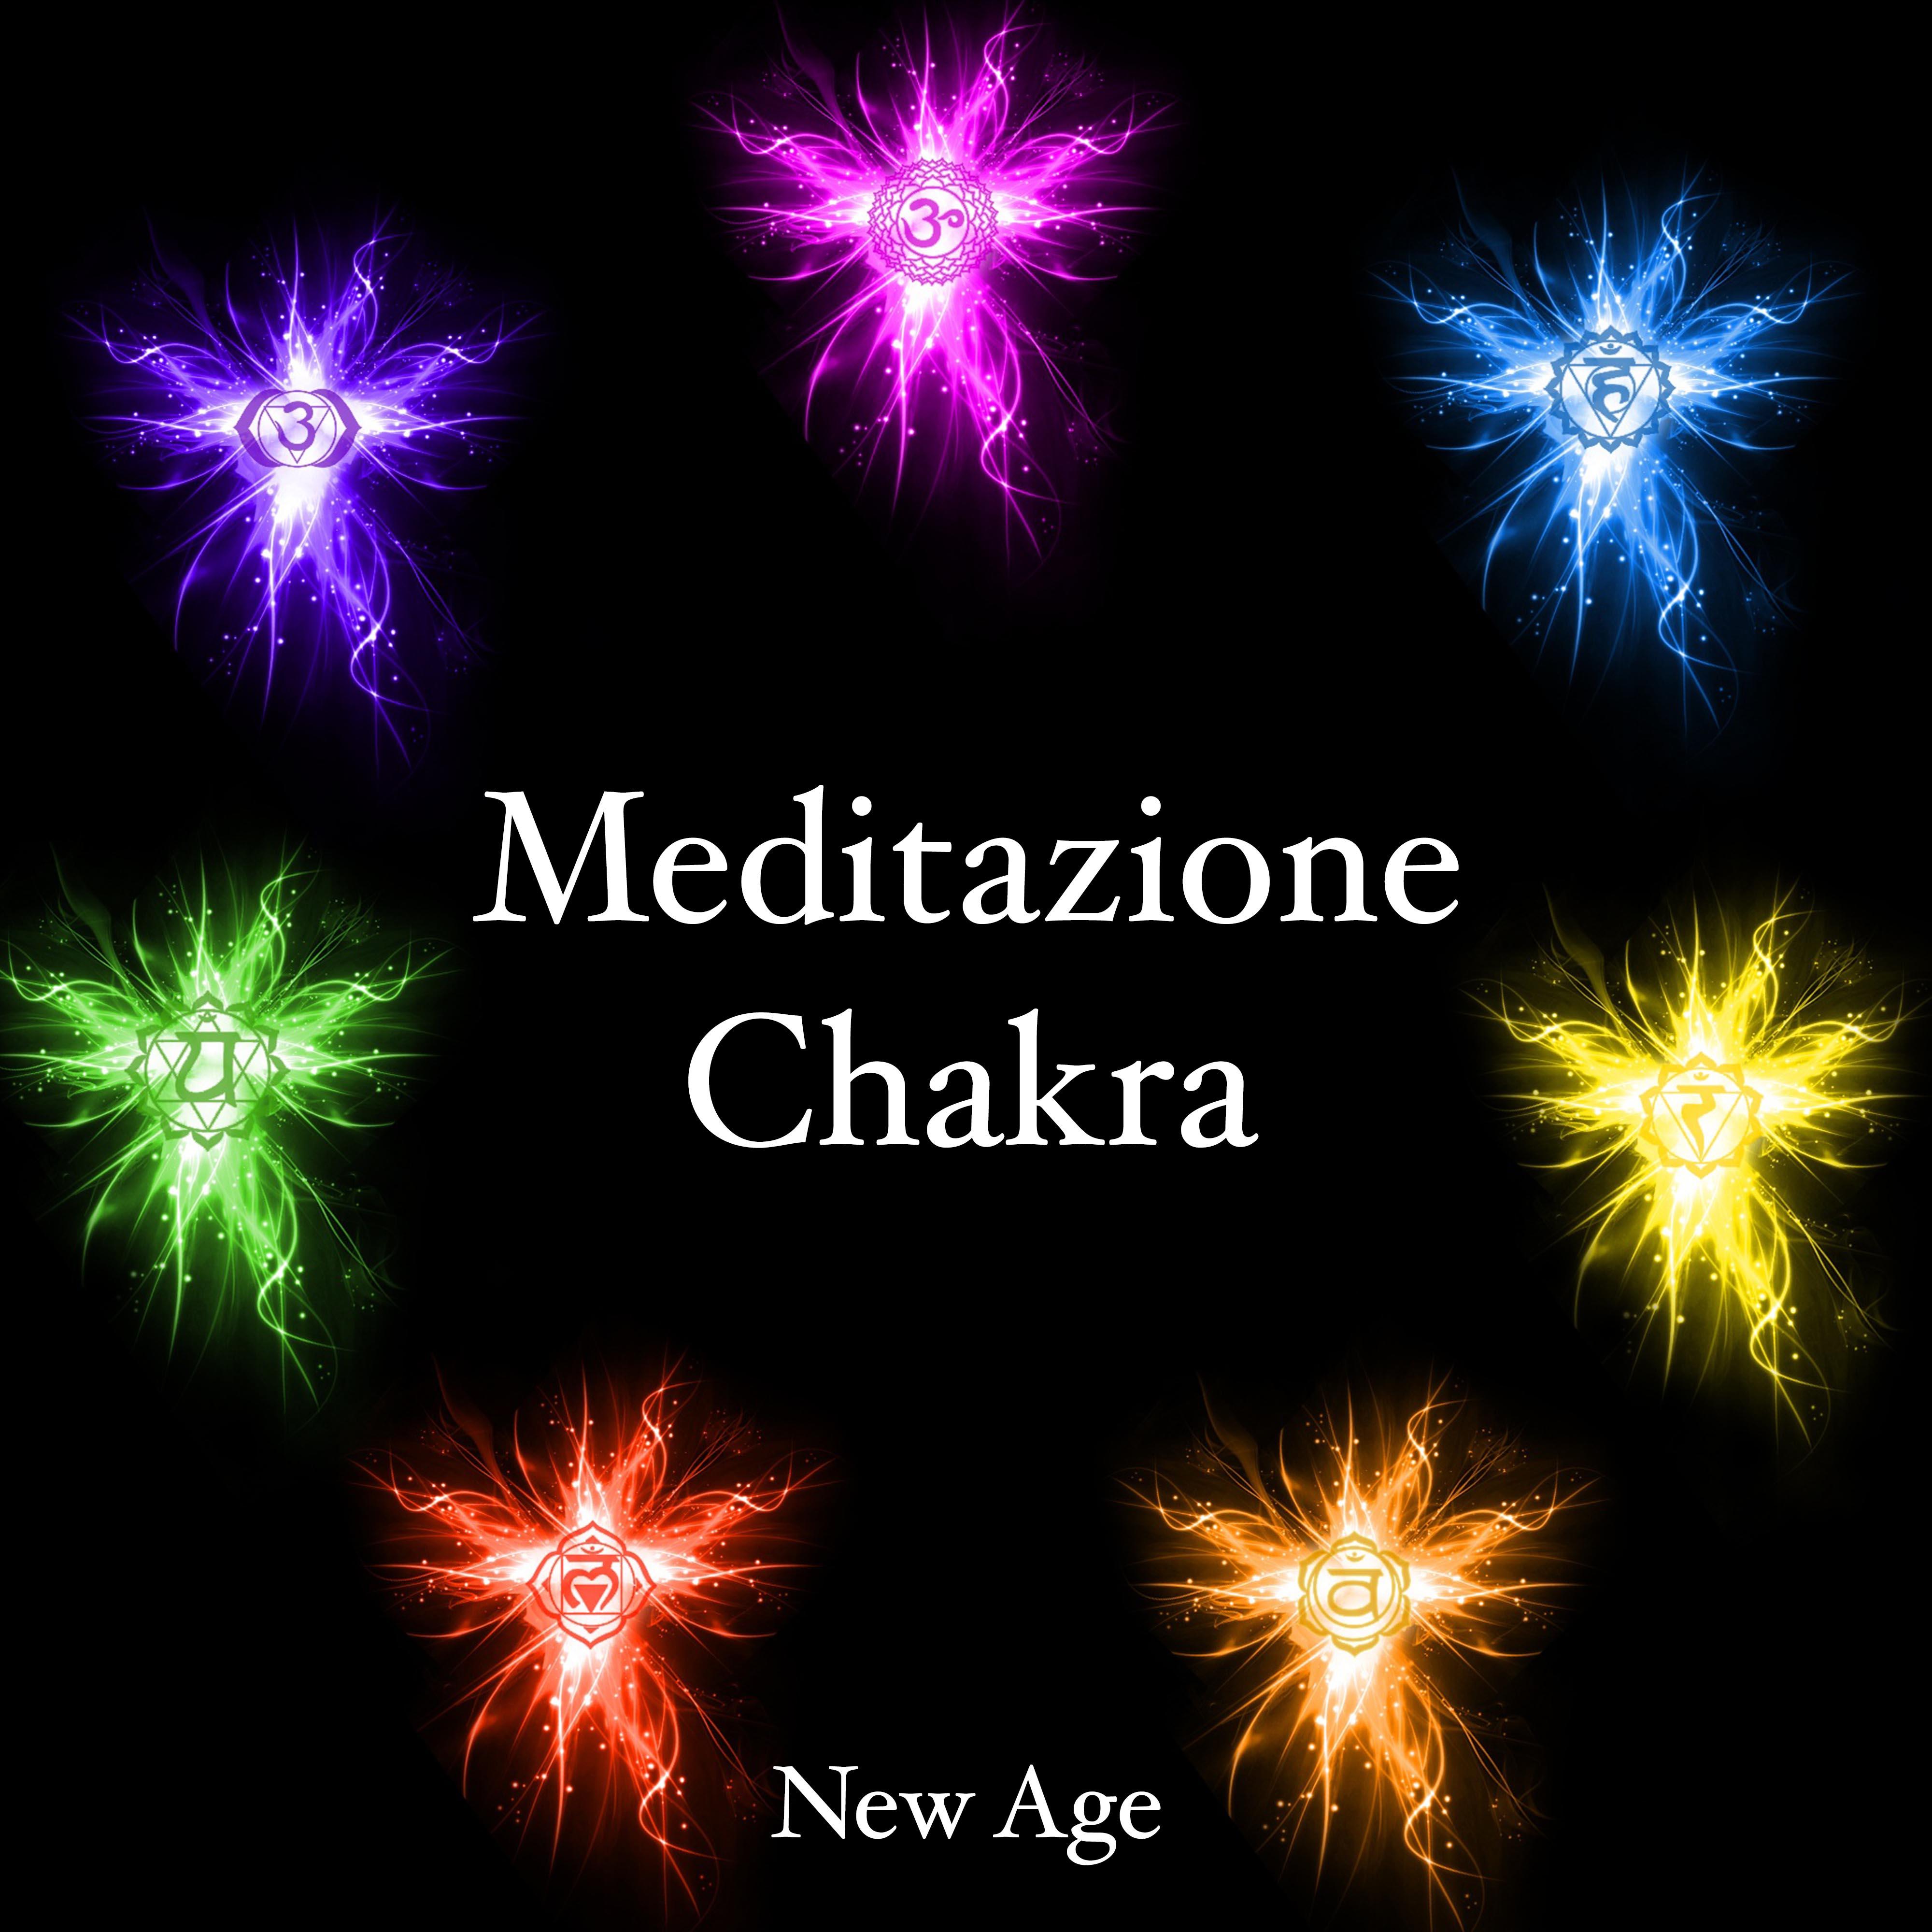 Meditazione Chakra: Musica per Meditazione